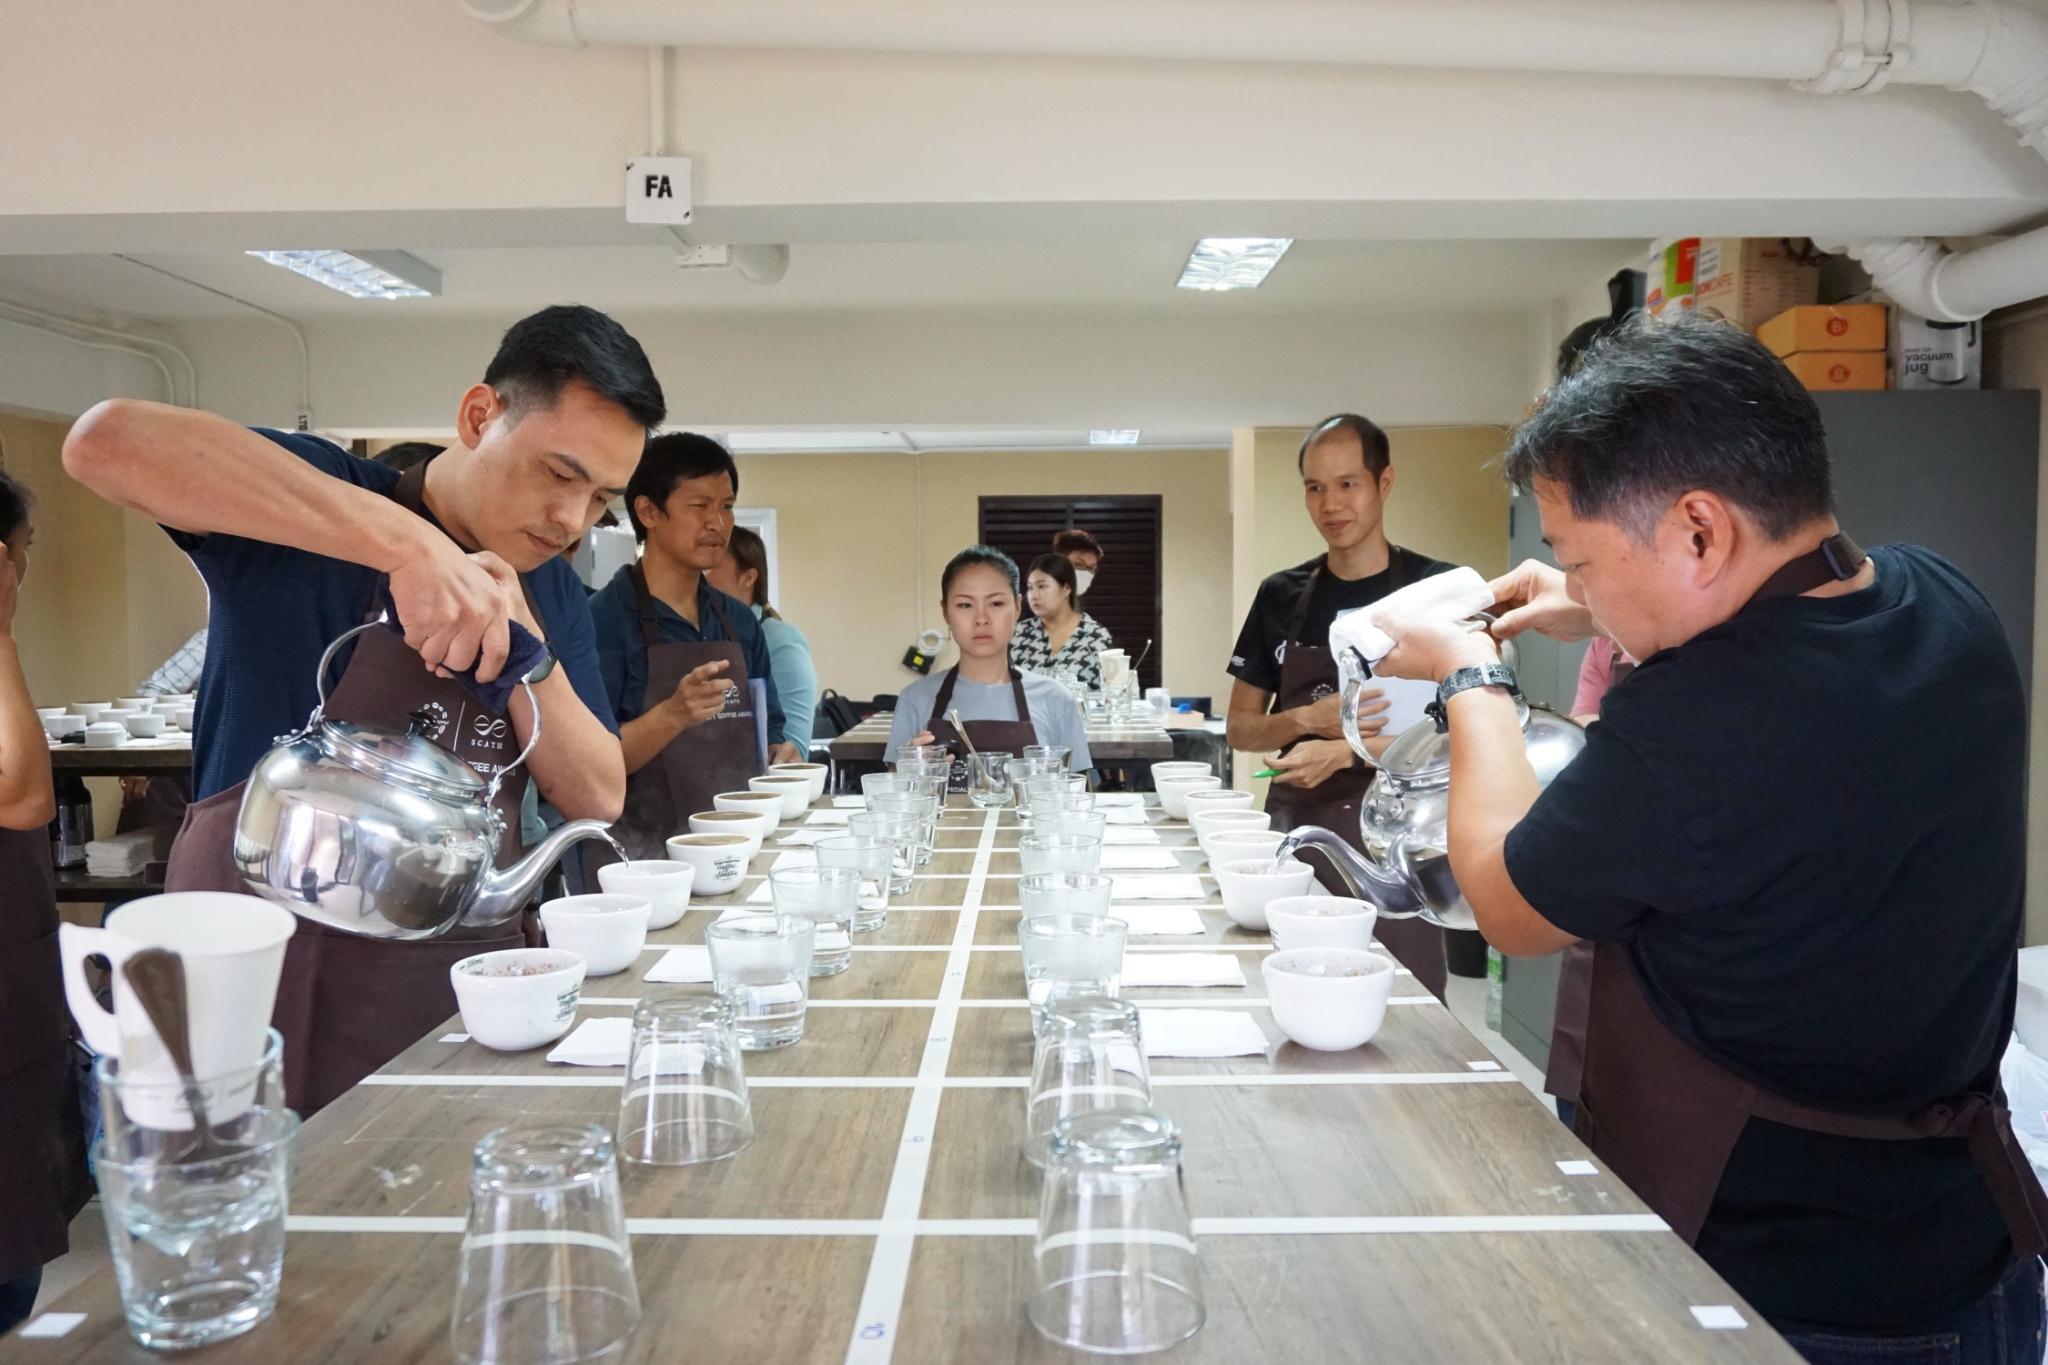 สมาคมกาแฟพิเศษไทย สร้างประวัติศาสตร์วงการกาแฟ จัดประมูลออนไลน์ เมล็ดกาแฟไทย ทำรายได้ยอดประมูลกว่า 3 ล้านบาท สูงสุดเป็นประวัติการณ์